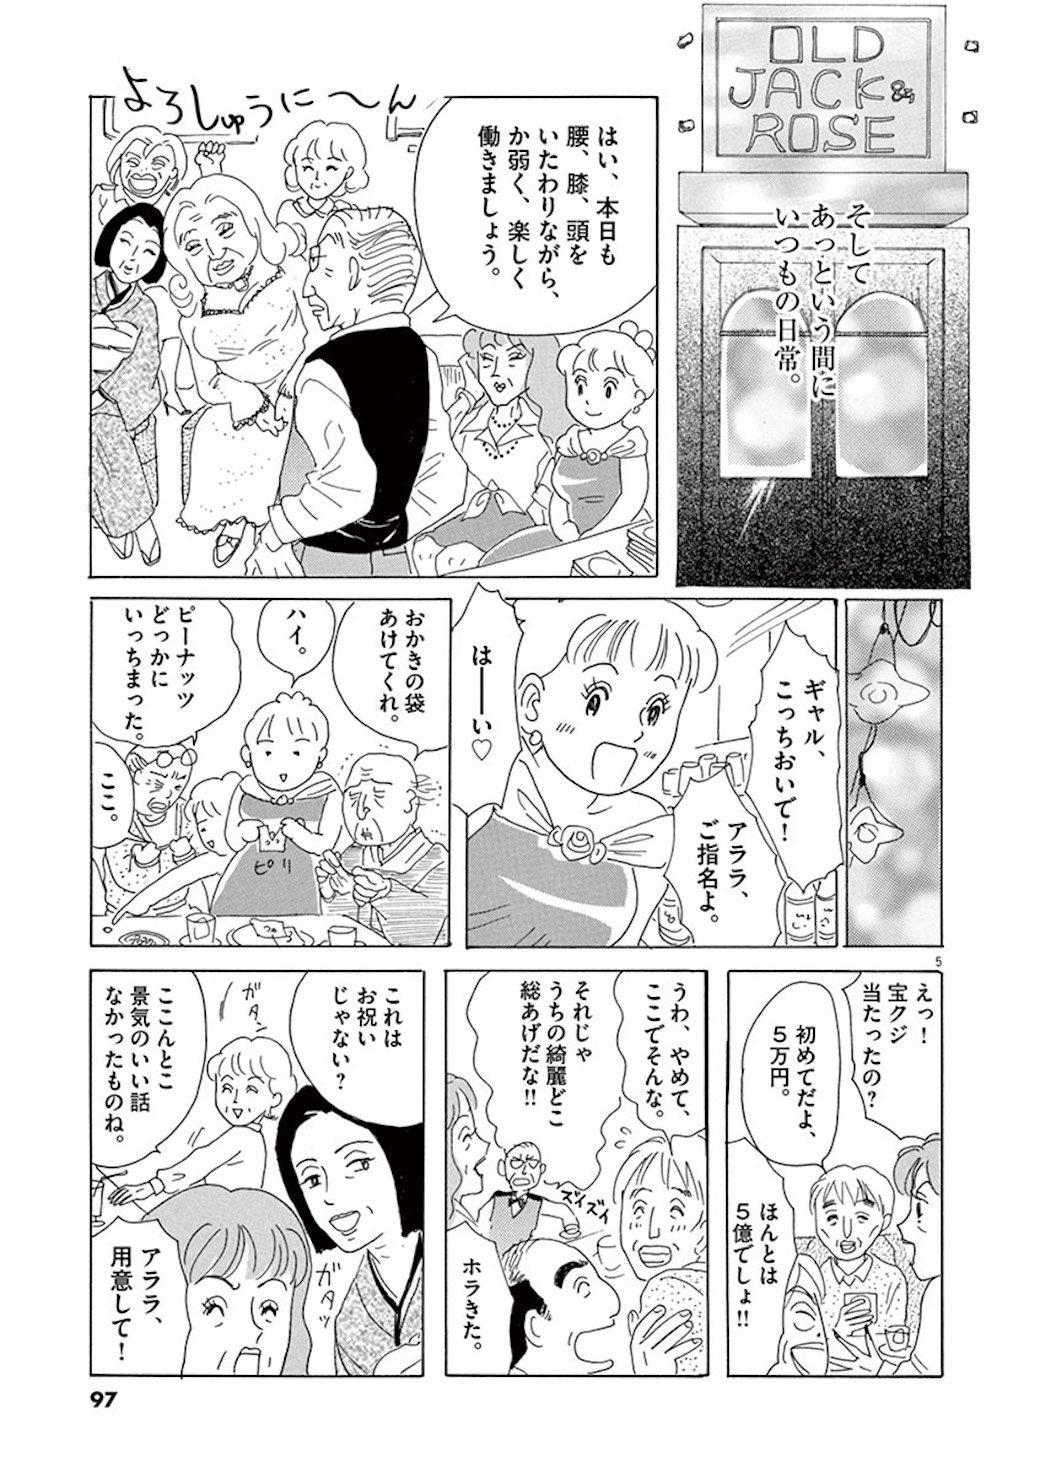 夫と子を船内で失った日本女性が作った居場所 漫画 東洋経済オンライン 経済ニュースの新基準